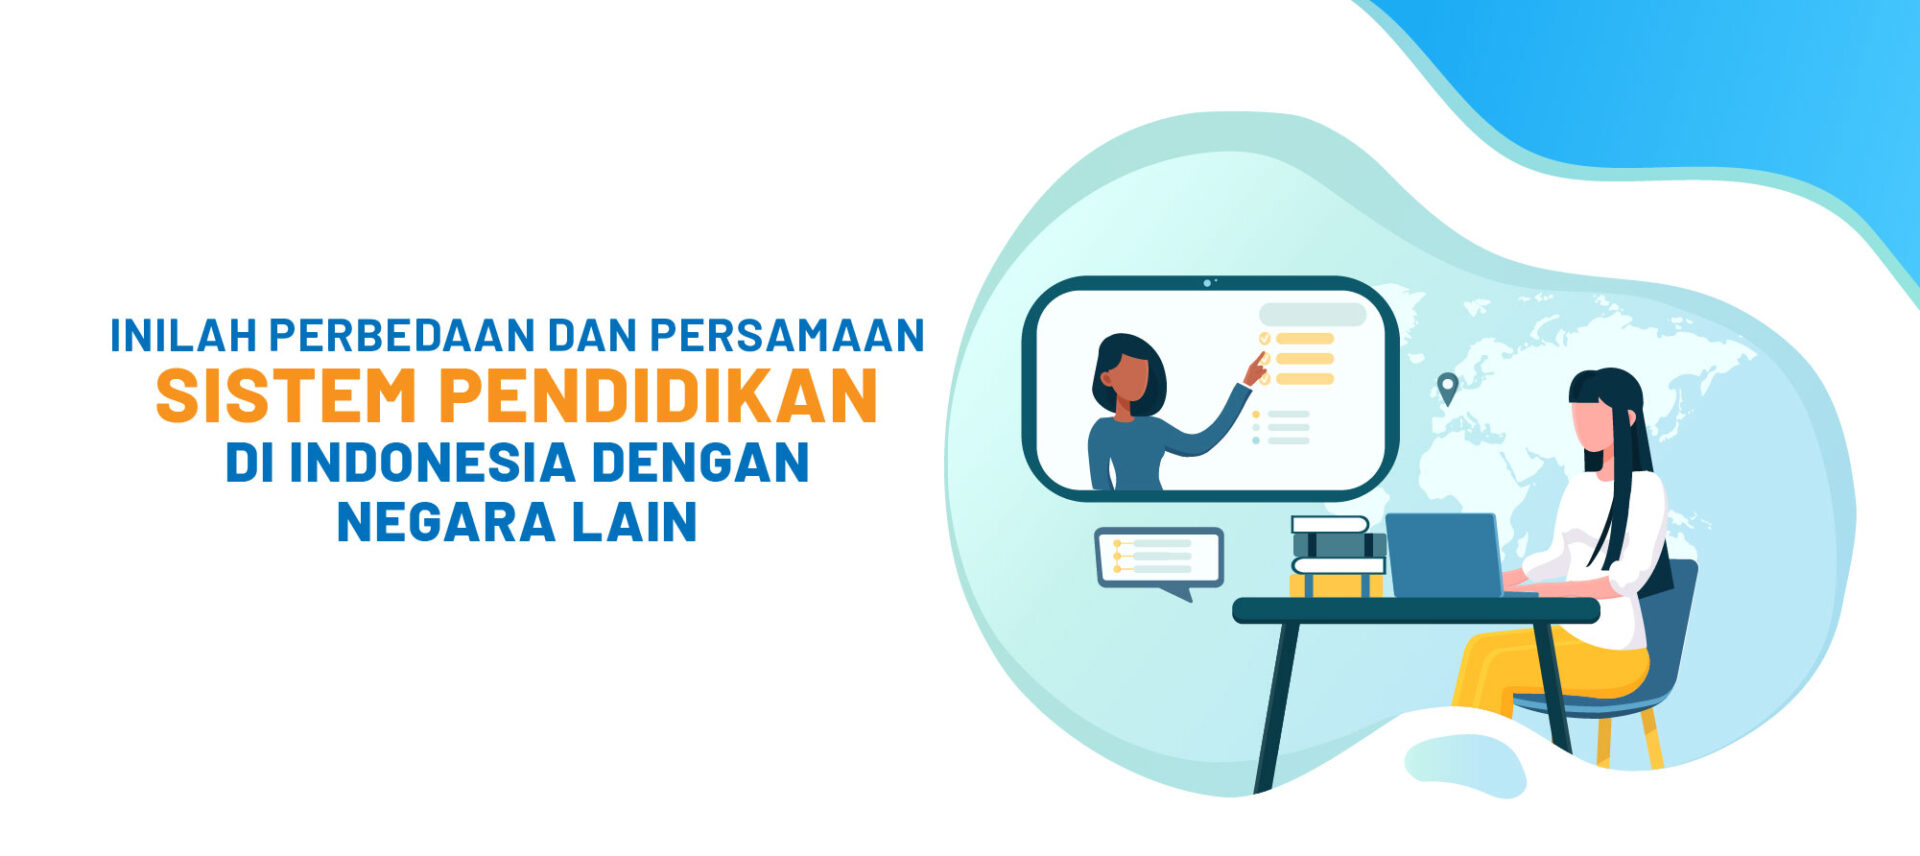 Perbedaan Dan Persamaan Sistem Pendidikan Di Indonesia Dengan Negara Lain |  BINUS Online Learning